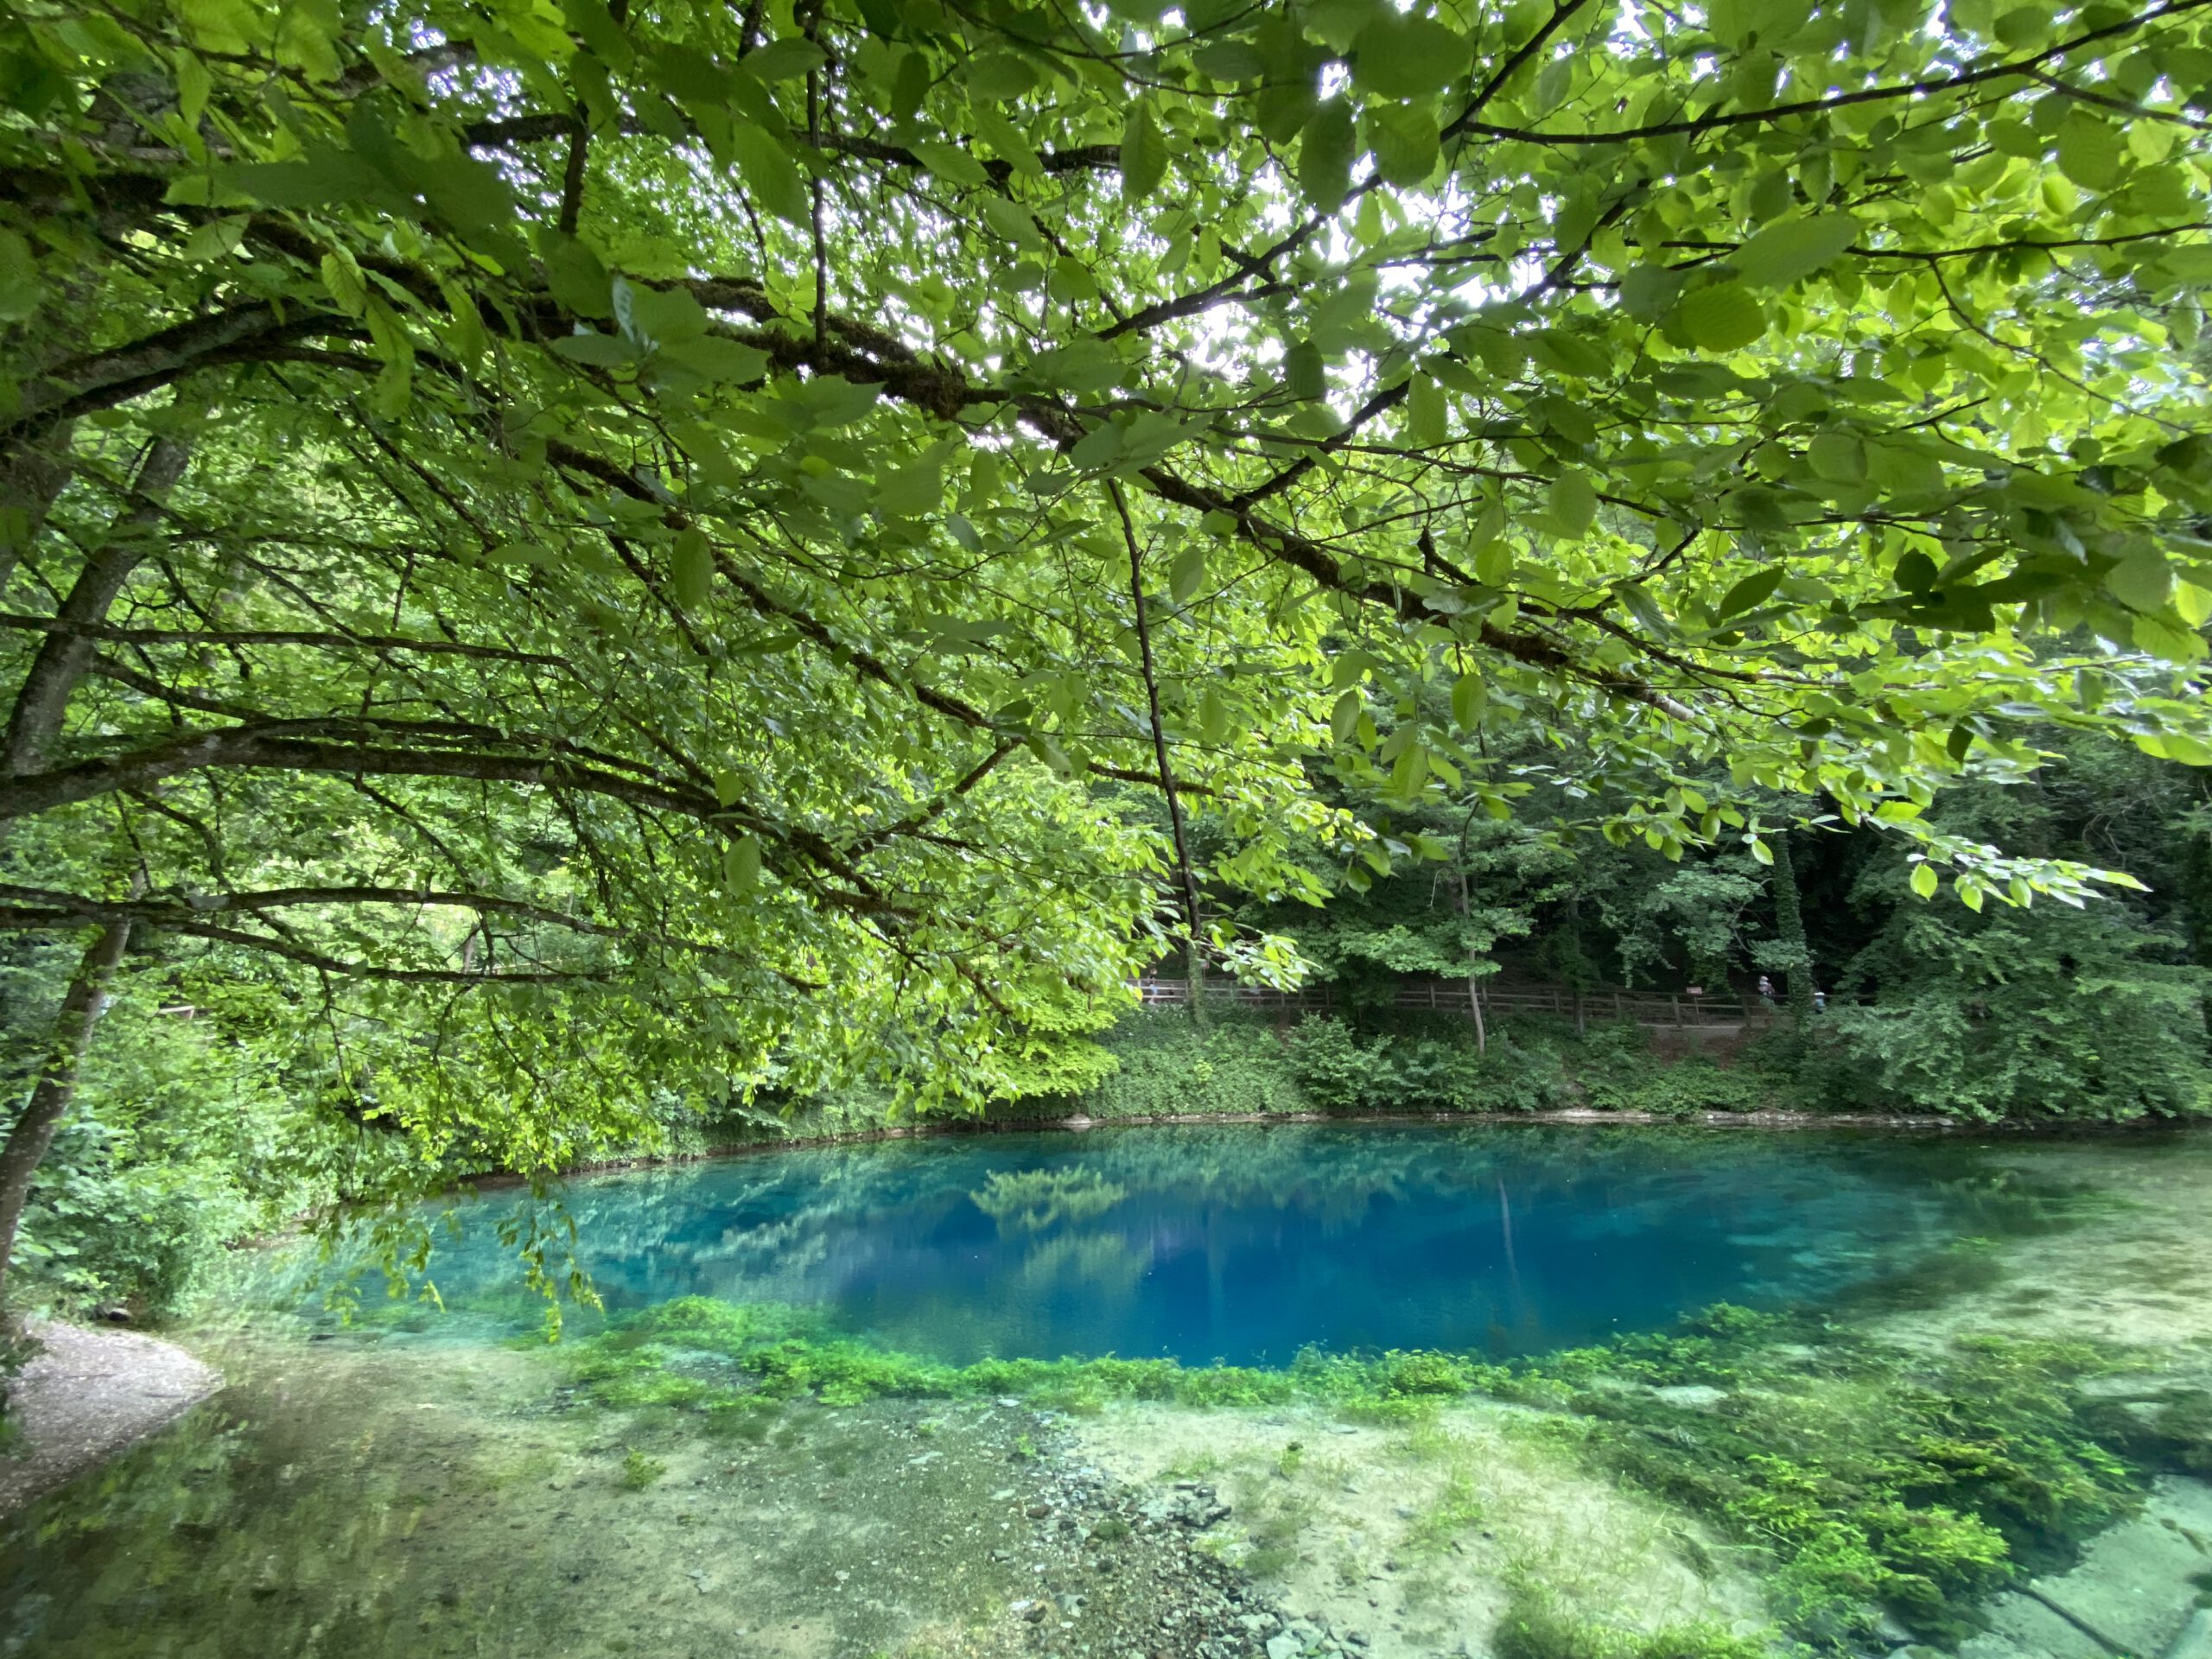 Der Blautopf bei Blaubeuren am 3. Juni 2020, unter grünen Blättern